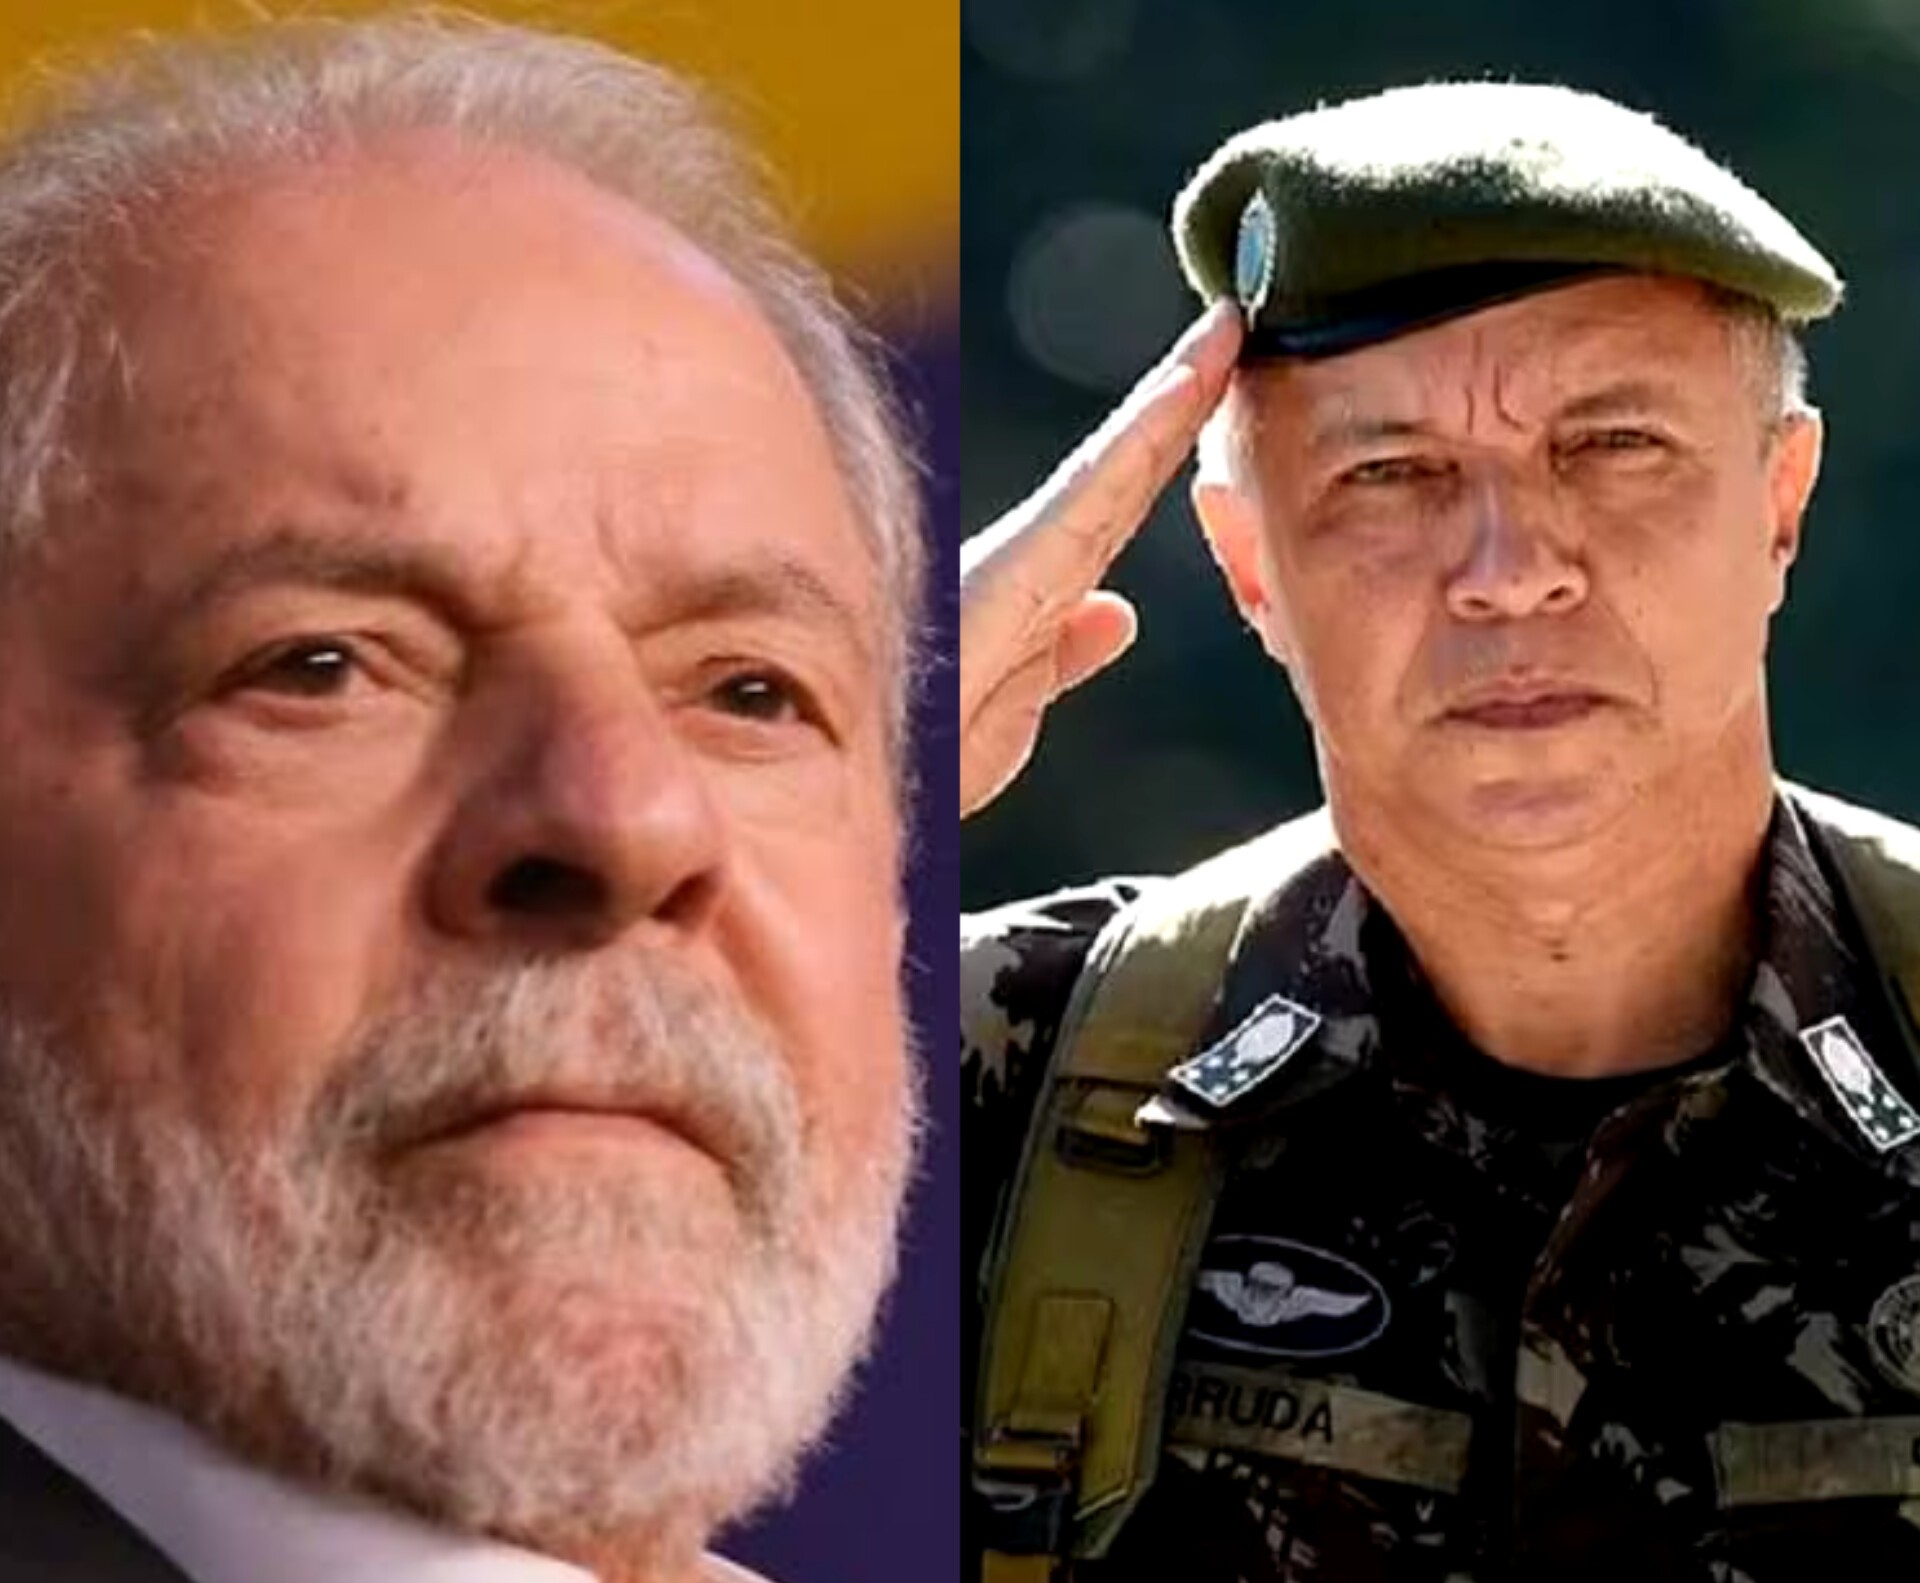 DECISÃO: Lula demite comandante do Exército após crise de confiança